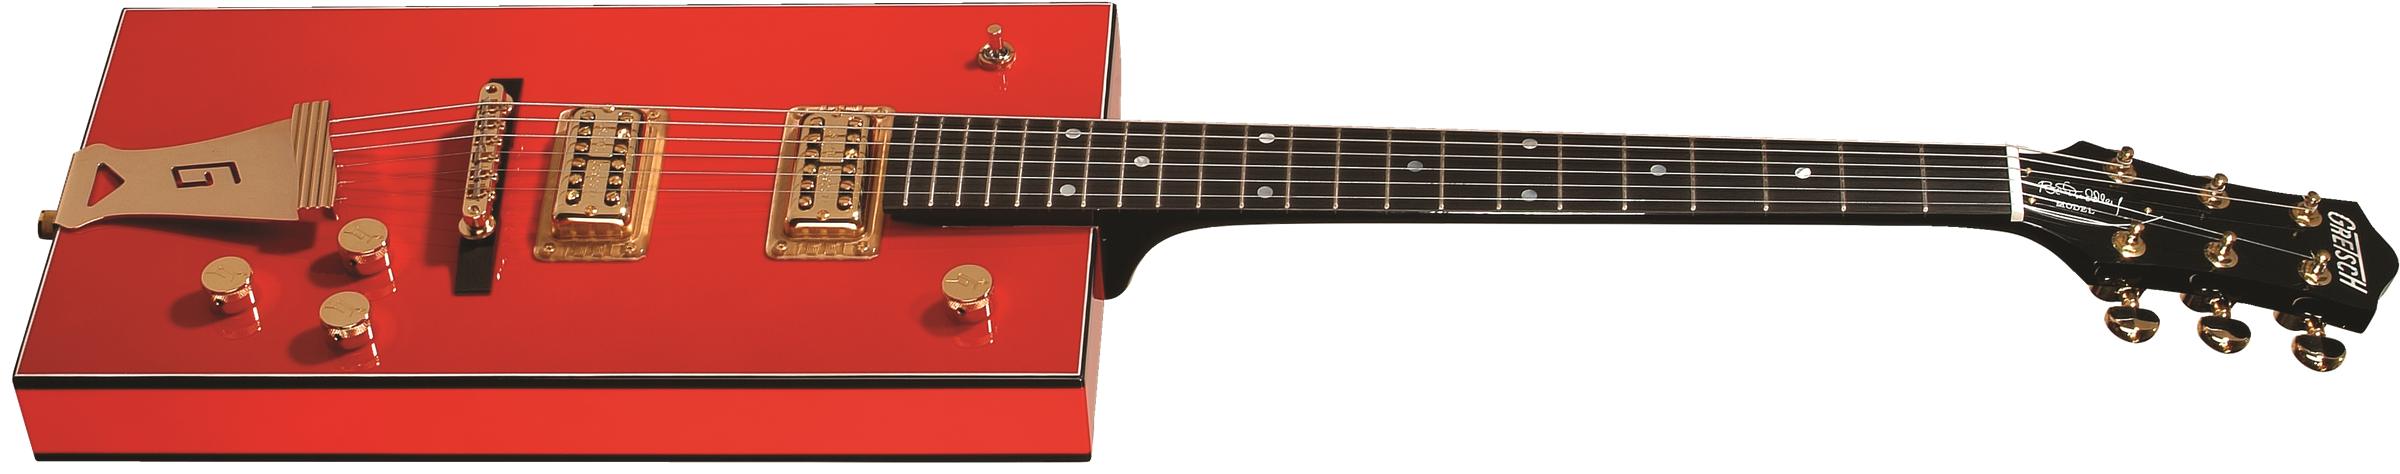 Gretsch G6138 Bo Diddley Electric Guitar - Firebird Red